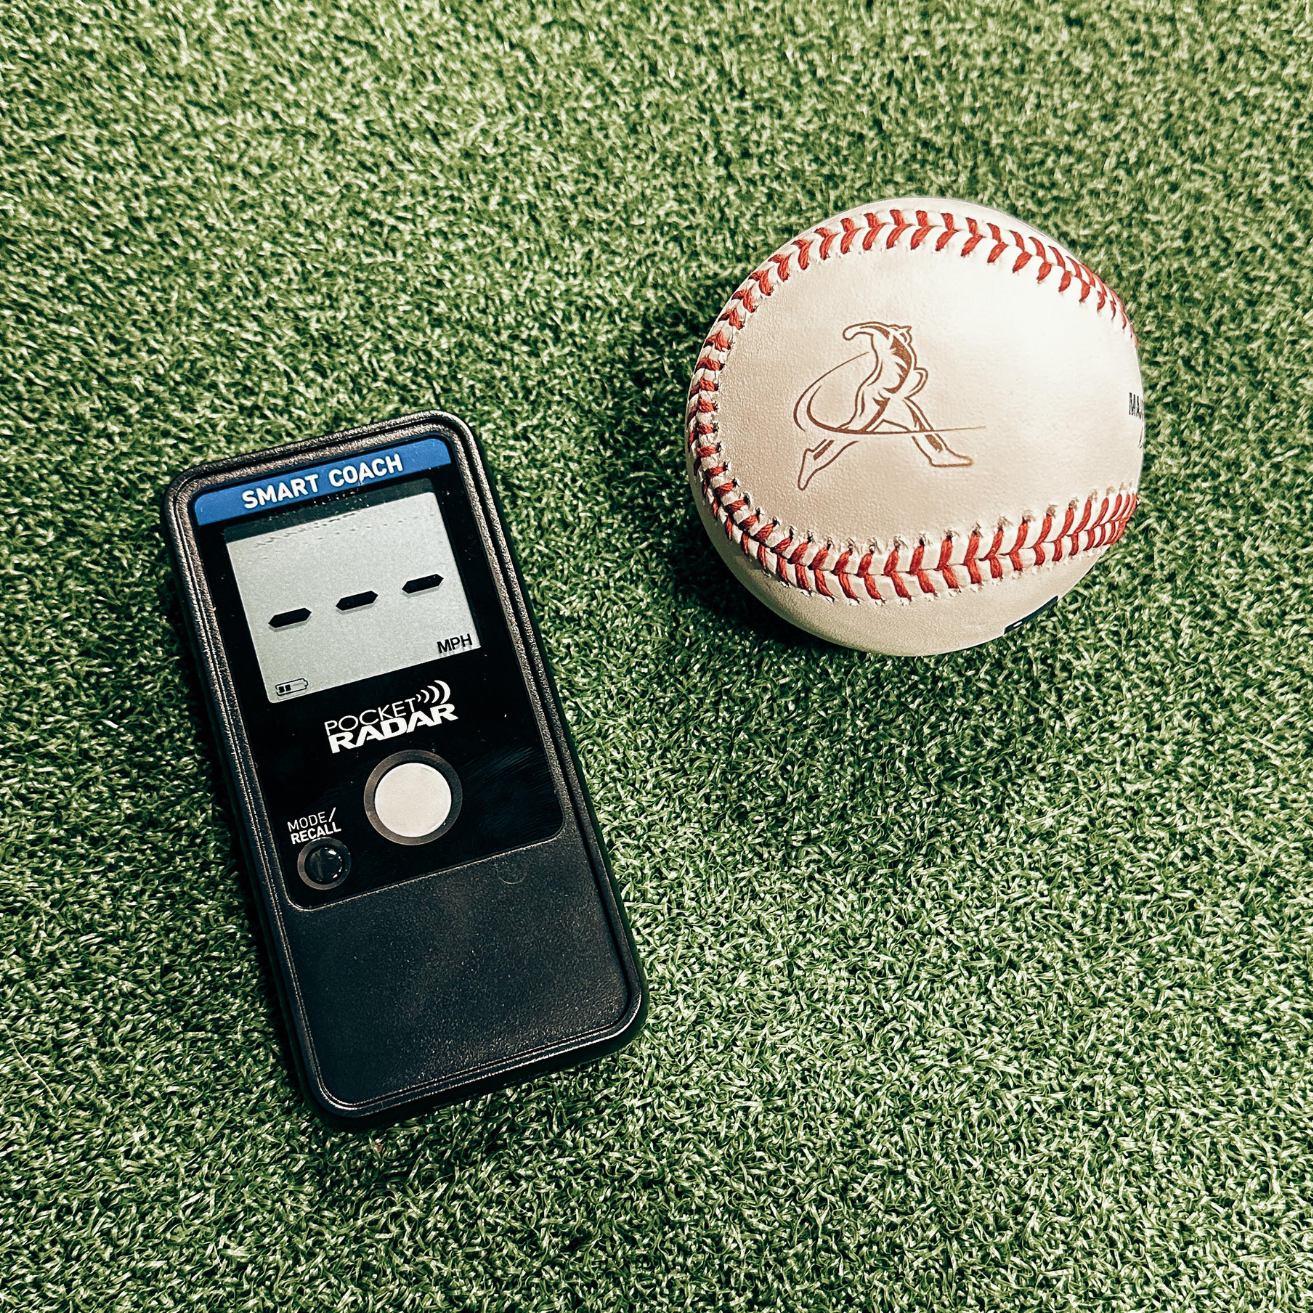 Pocket Radar beside a Tread baseball